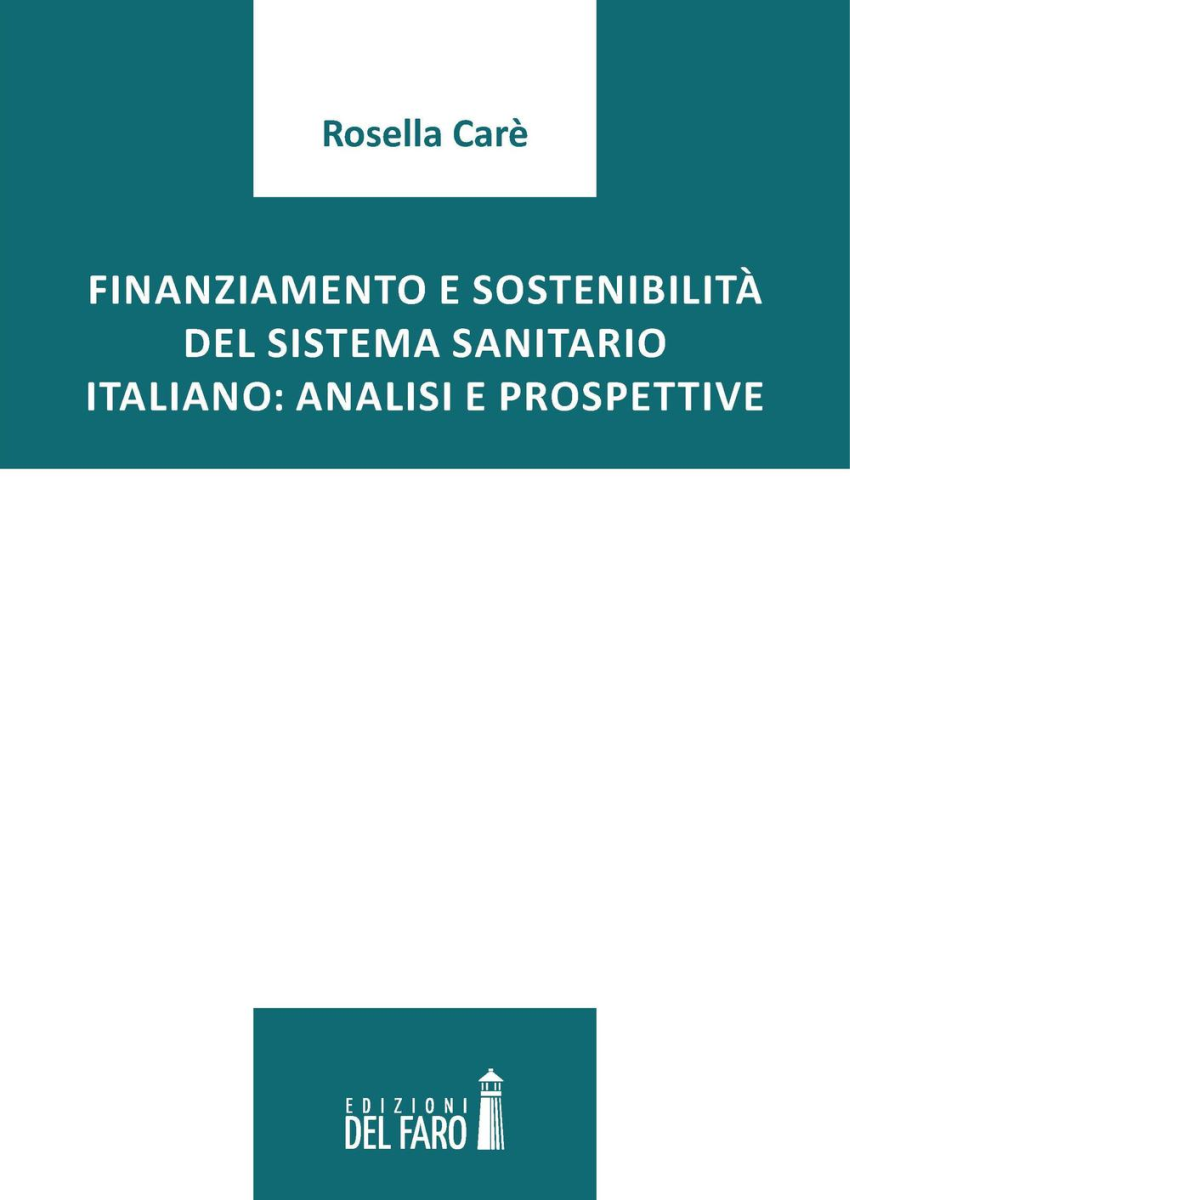 Finanziamento e sostenibilit? del sistema sanitario italiano - 2016